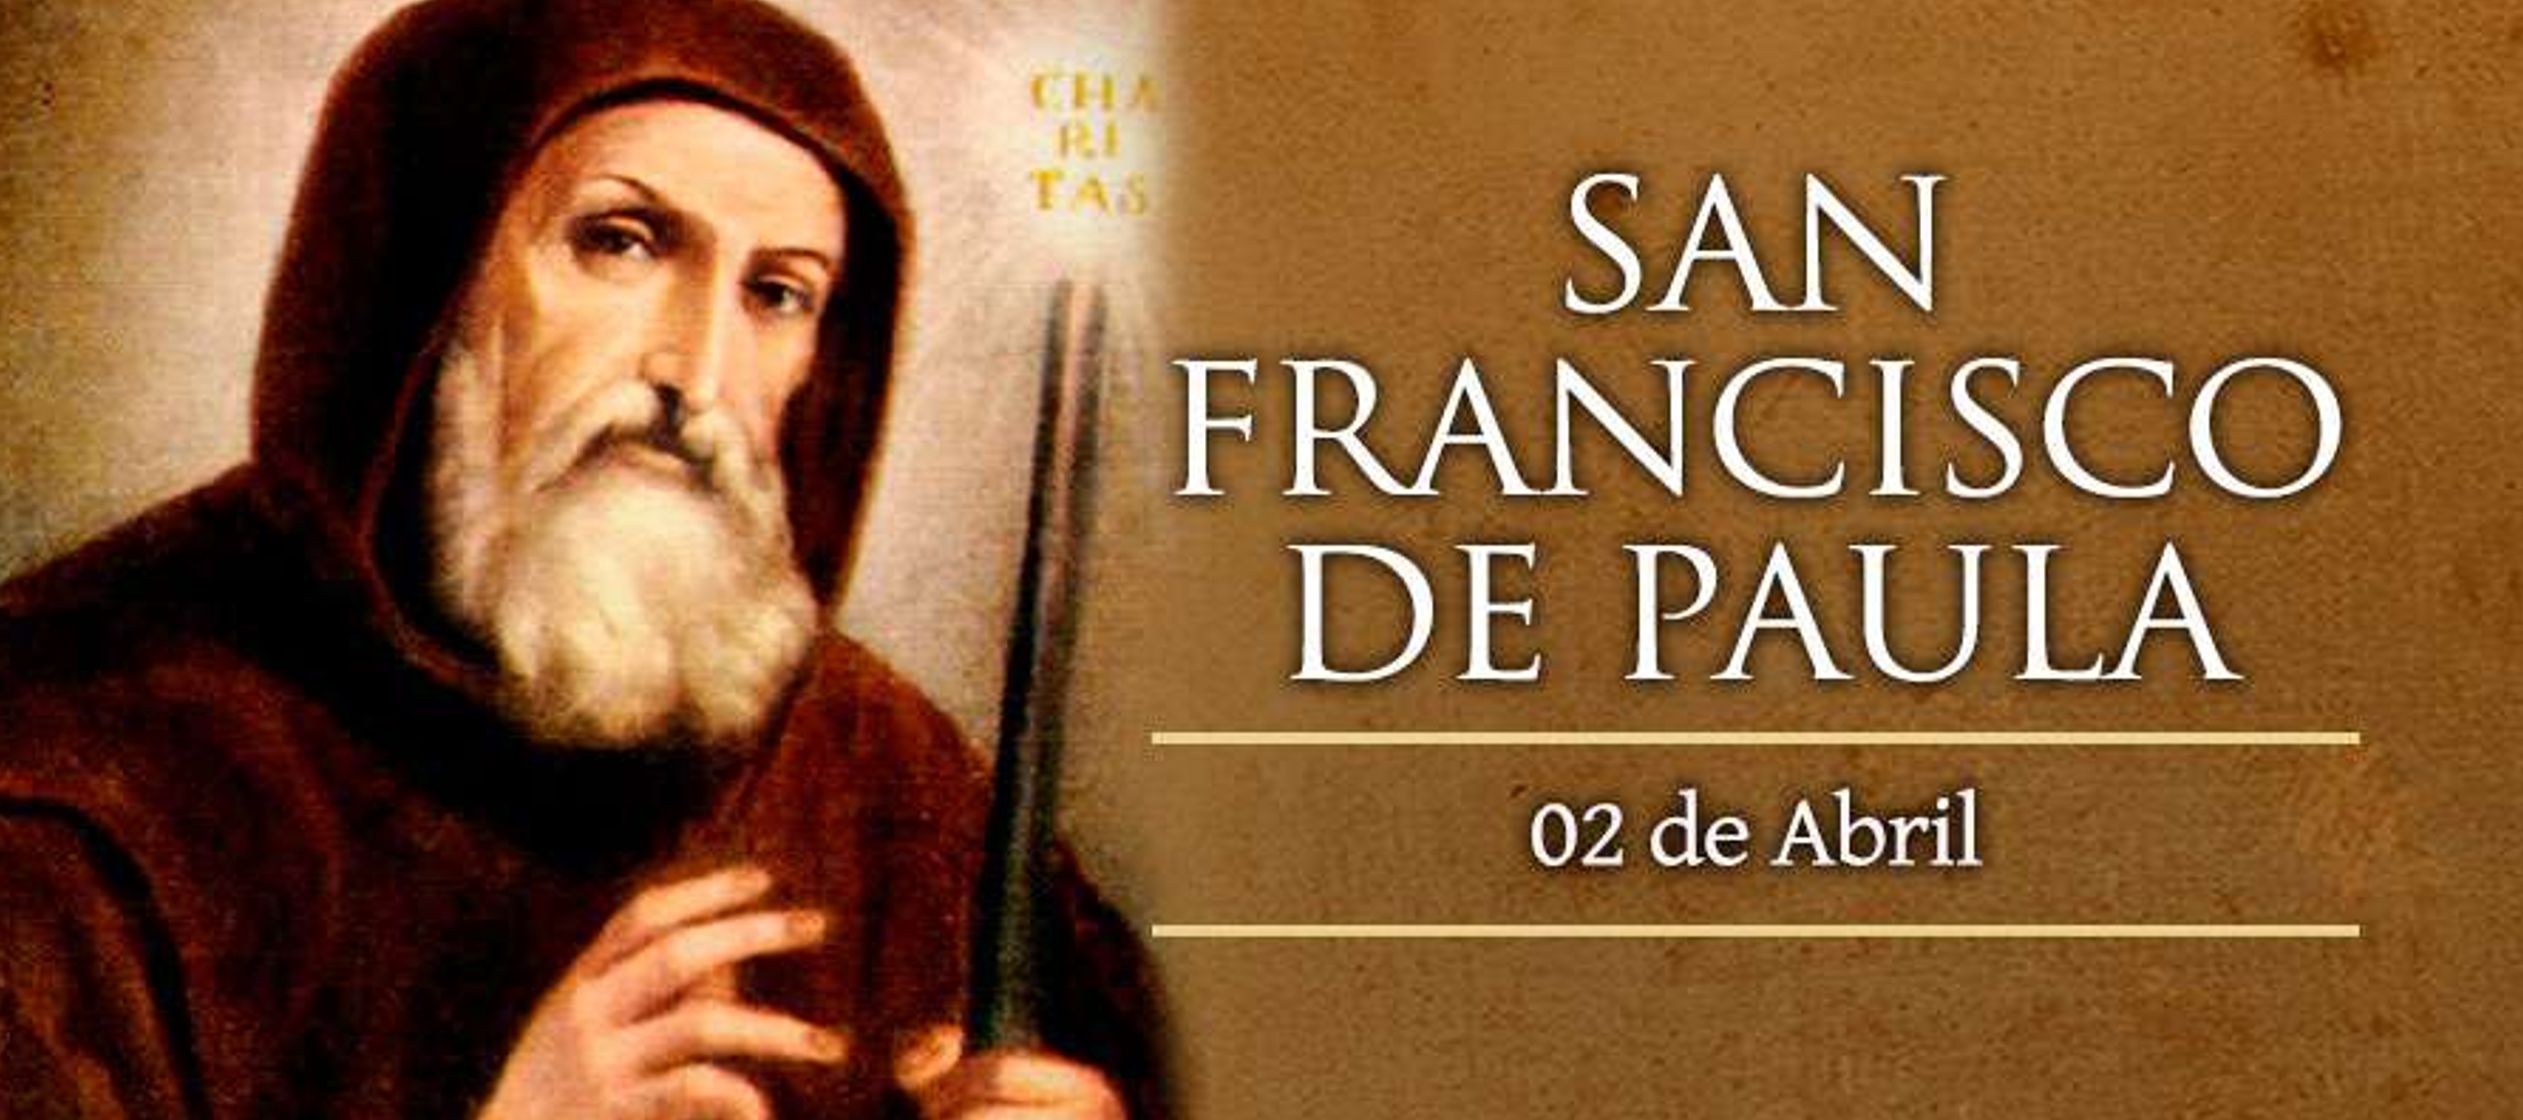 Francisco nació en Paula, región de Calabria (Italia) en el año 1416, y es uno...